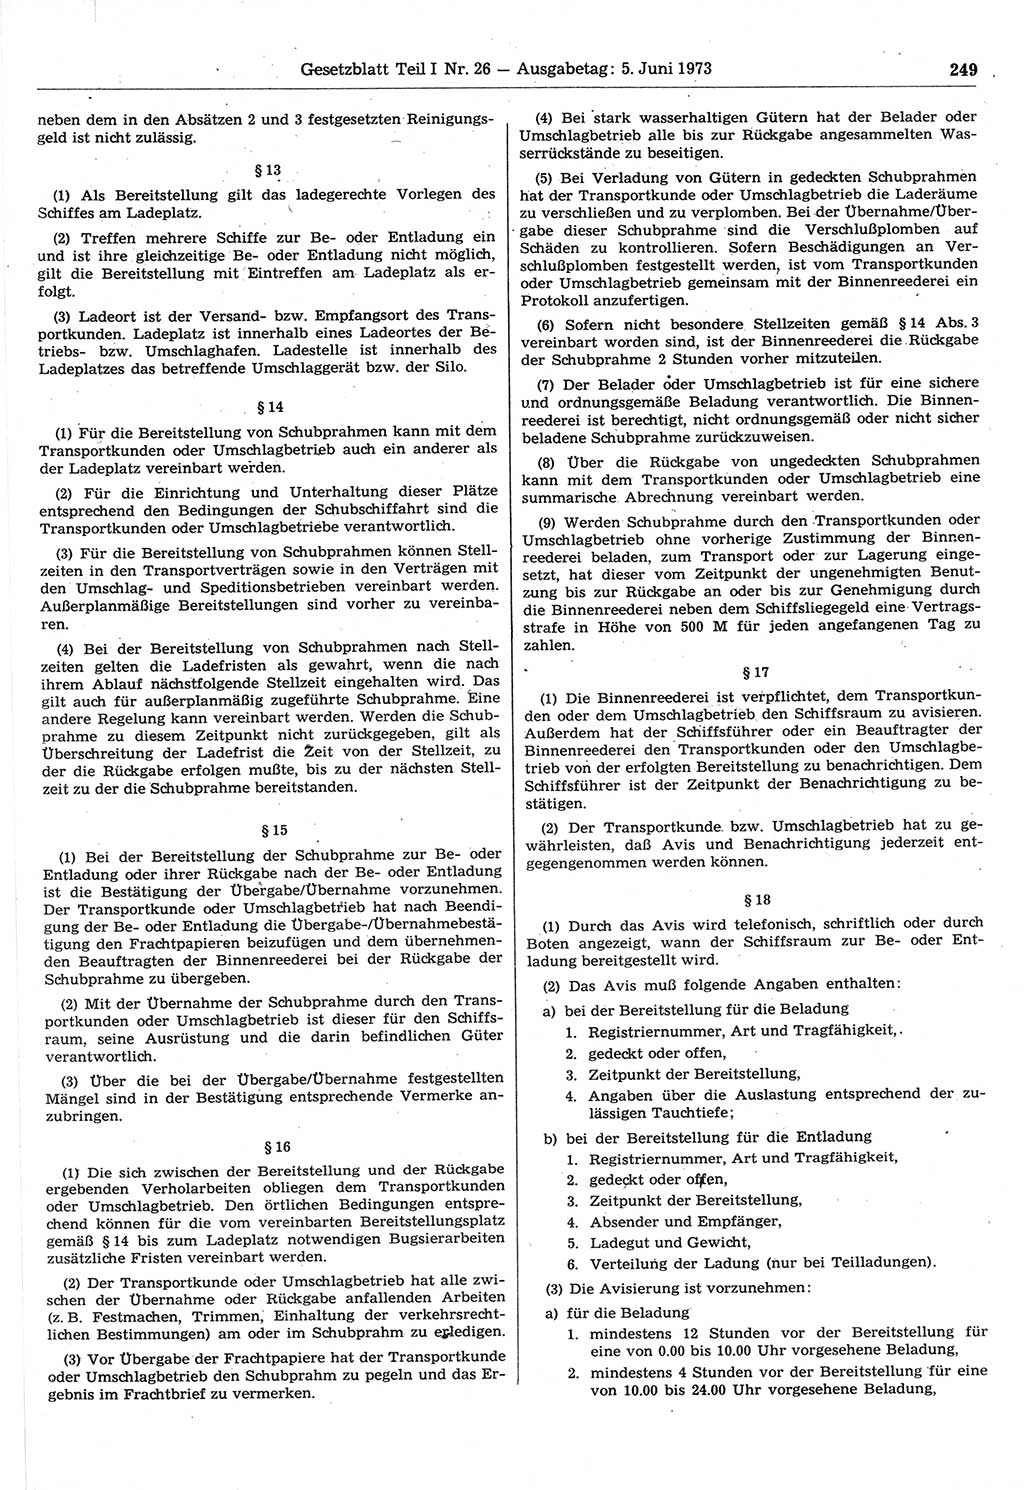 Gesetzblatt (GBl.) der Deutschen Demokratischen Republik (DDR) Teil Ⅰ 1973, Seite 249 (GBl. DDR Ⅰ 1973, S. 249)